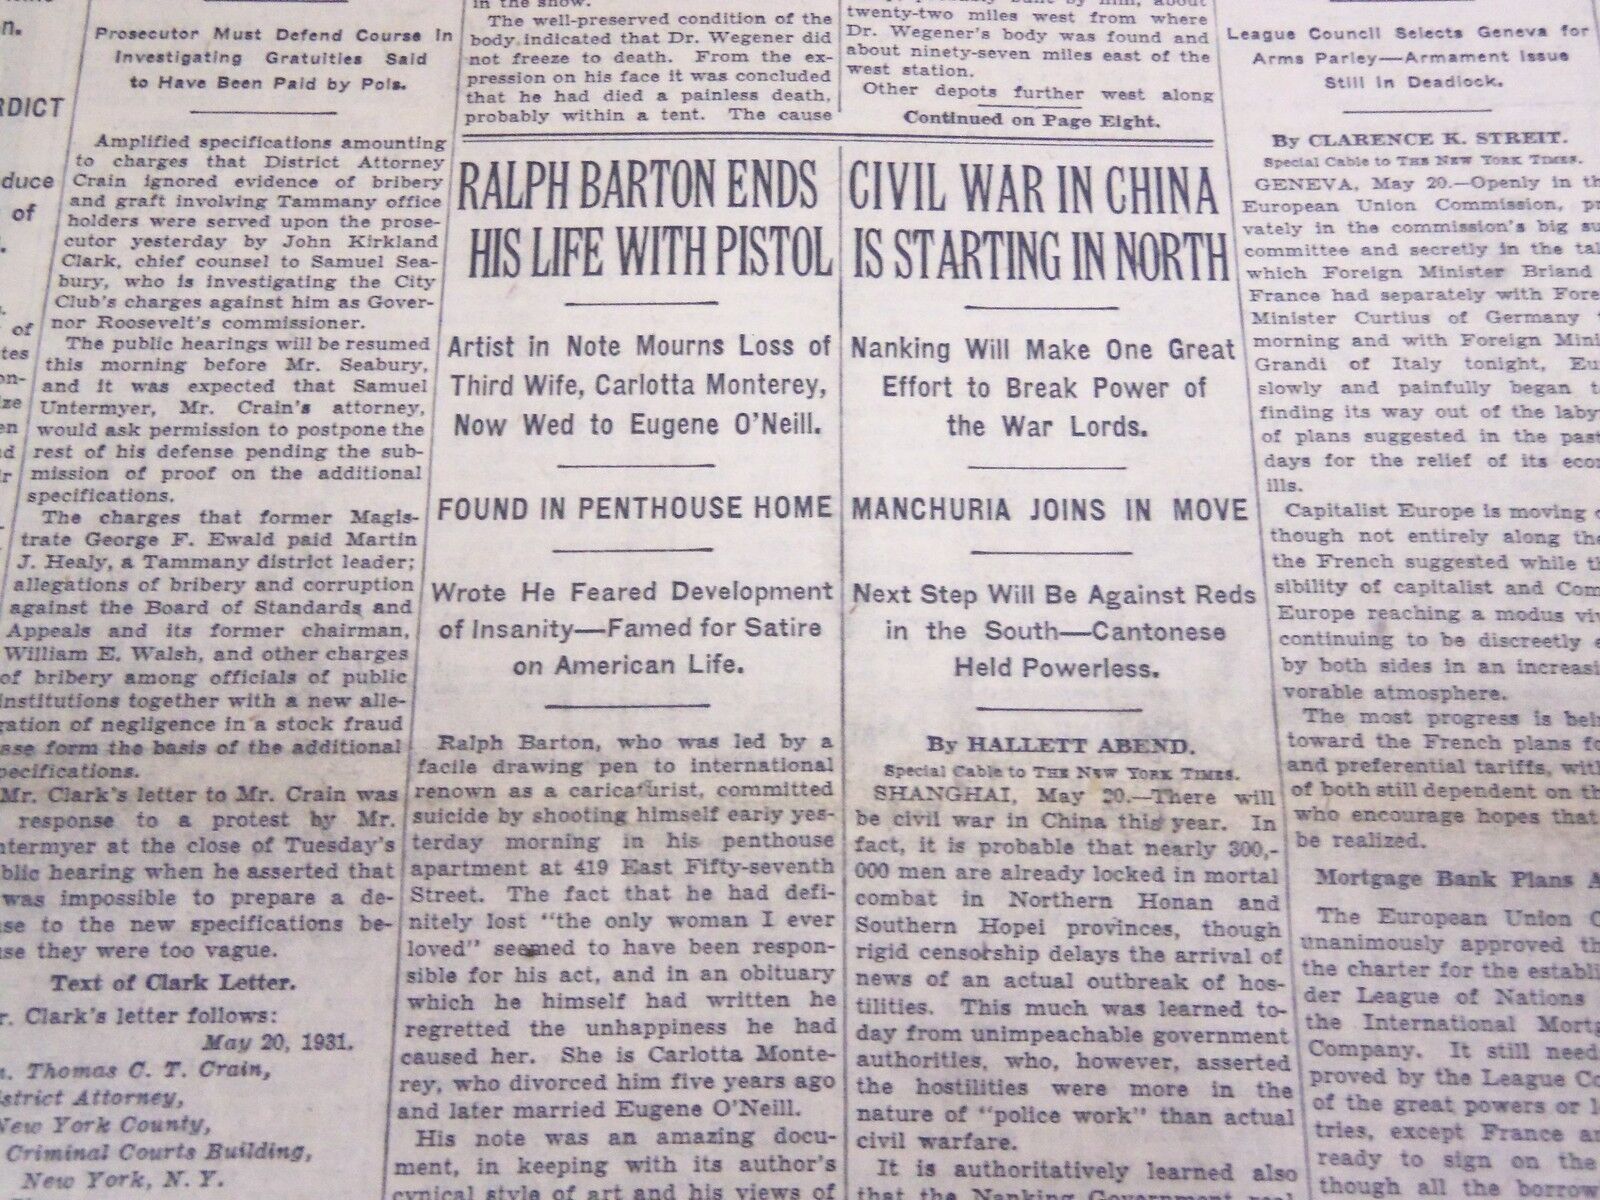 1931 MAY 21 NEW YORK TIMES - RALPH BARTON KILLS SELF - NT 3943